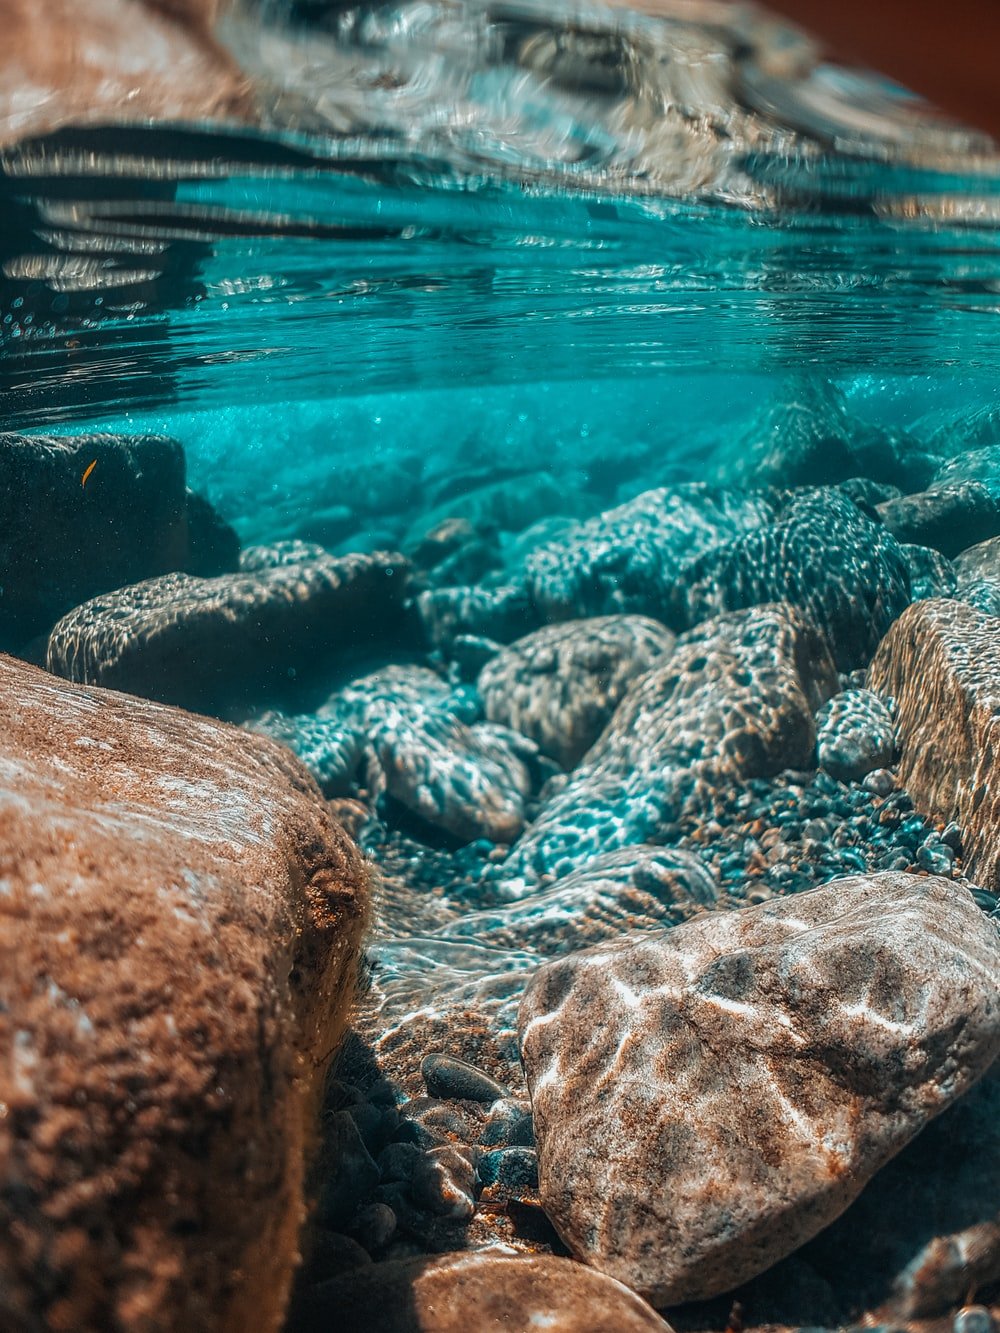  دانلود عکس بسیار قشنگ از سنگ فیروزه داخل آب